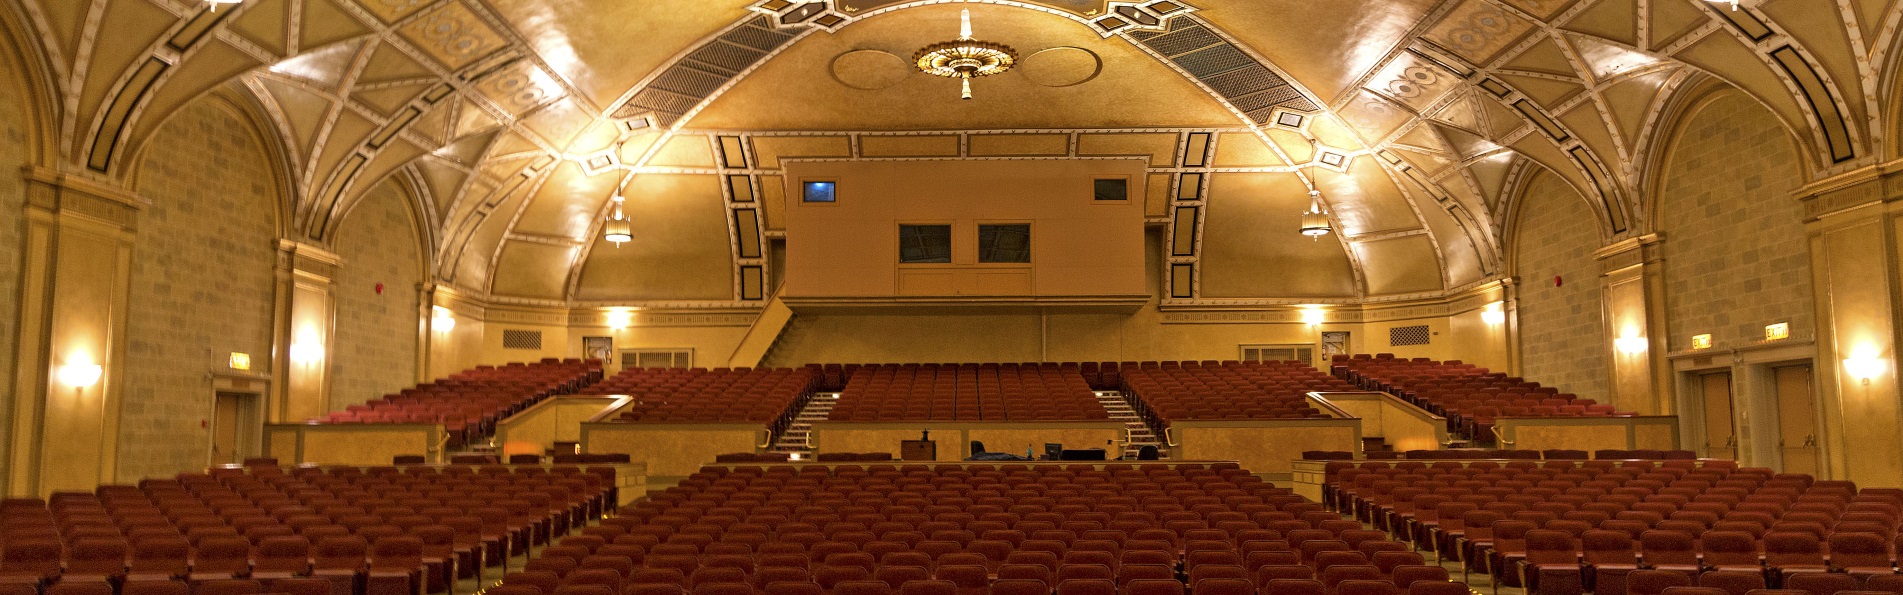 empty auditorium seats